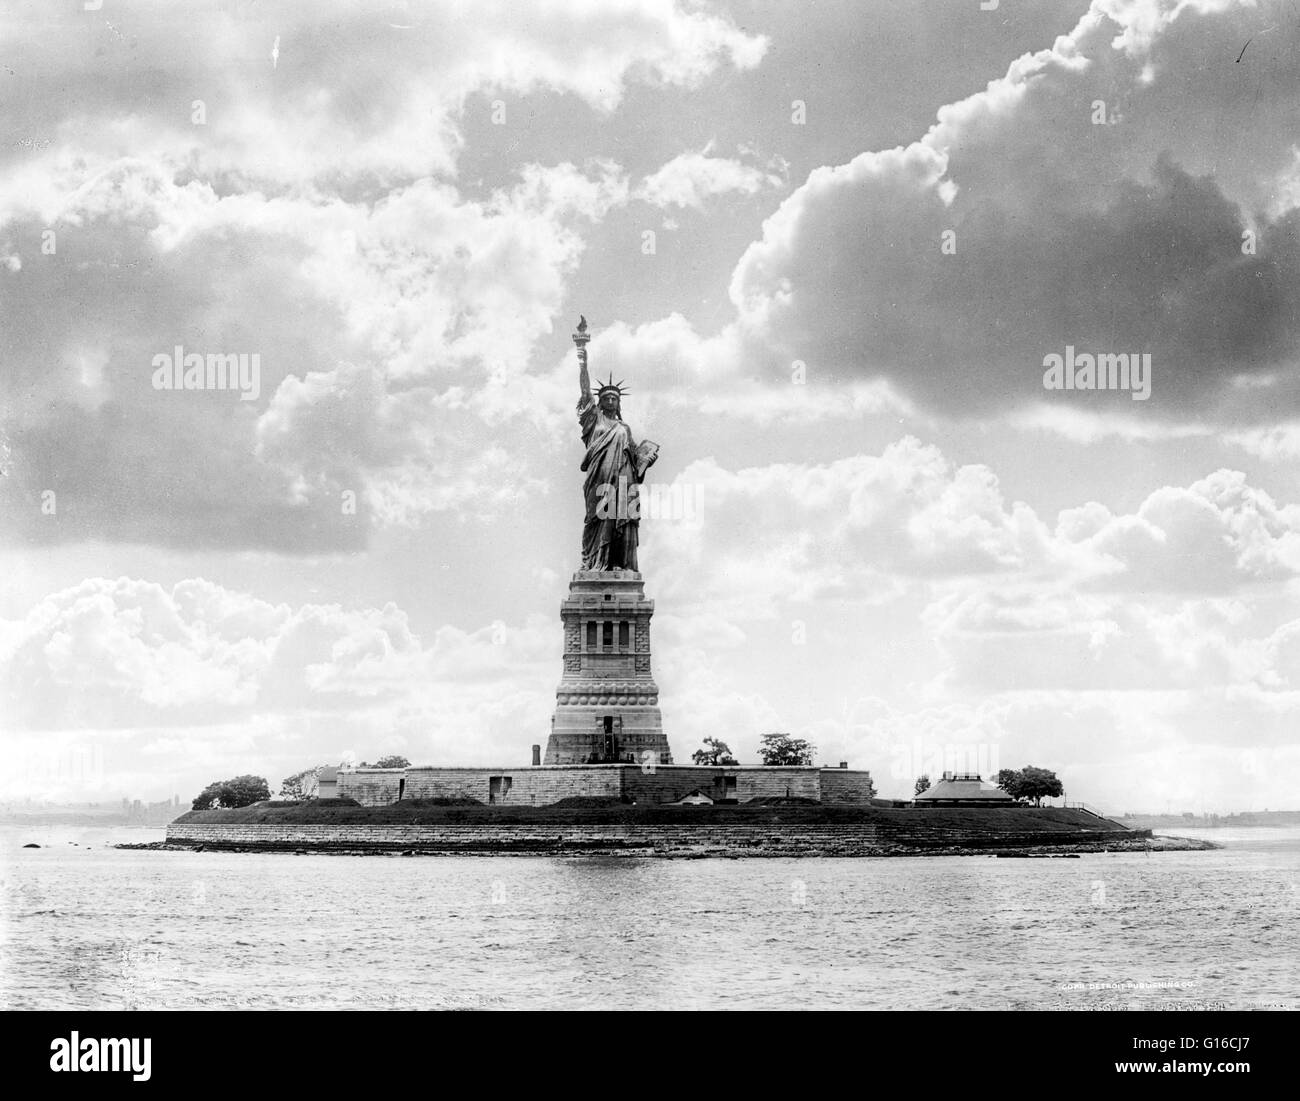 Die Freiheitsstatue ist eine kolossale neoklassische Skulptur auf Liberty Island im New Yorker Hafen, von Frédéric Bartholdi entworfen und am 28. Oktober 1886 geweiht. Die Statue, ein Geschenk an die Vereinigten Staaten von den Franzosen, ist von einer wogenden weibliche figu Stockfoto